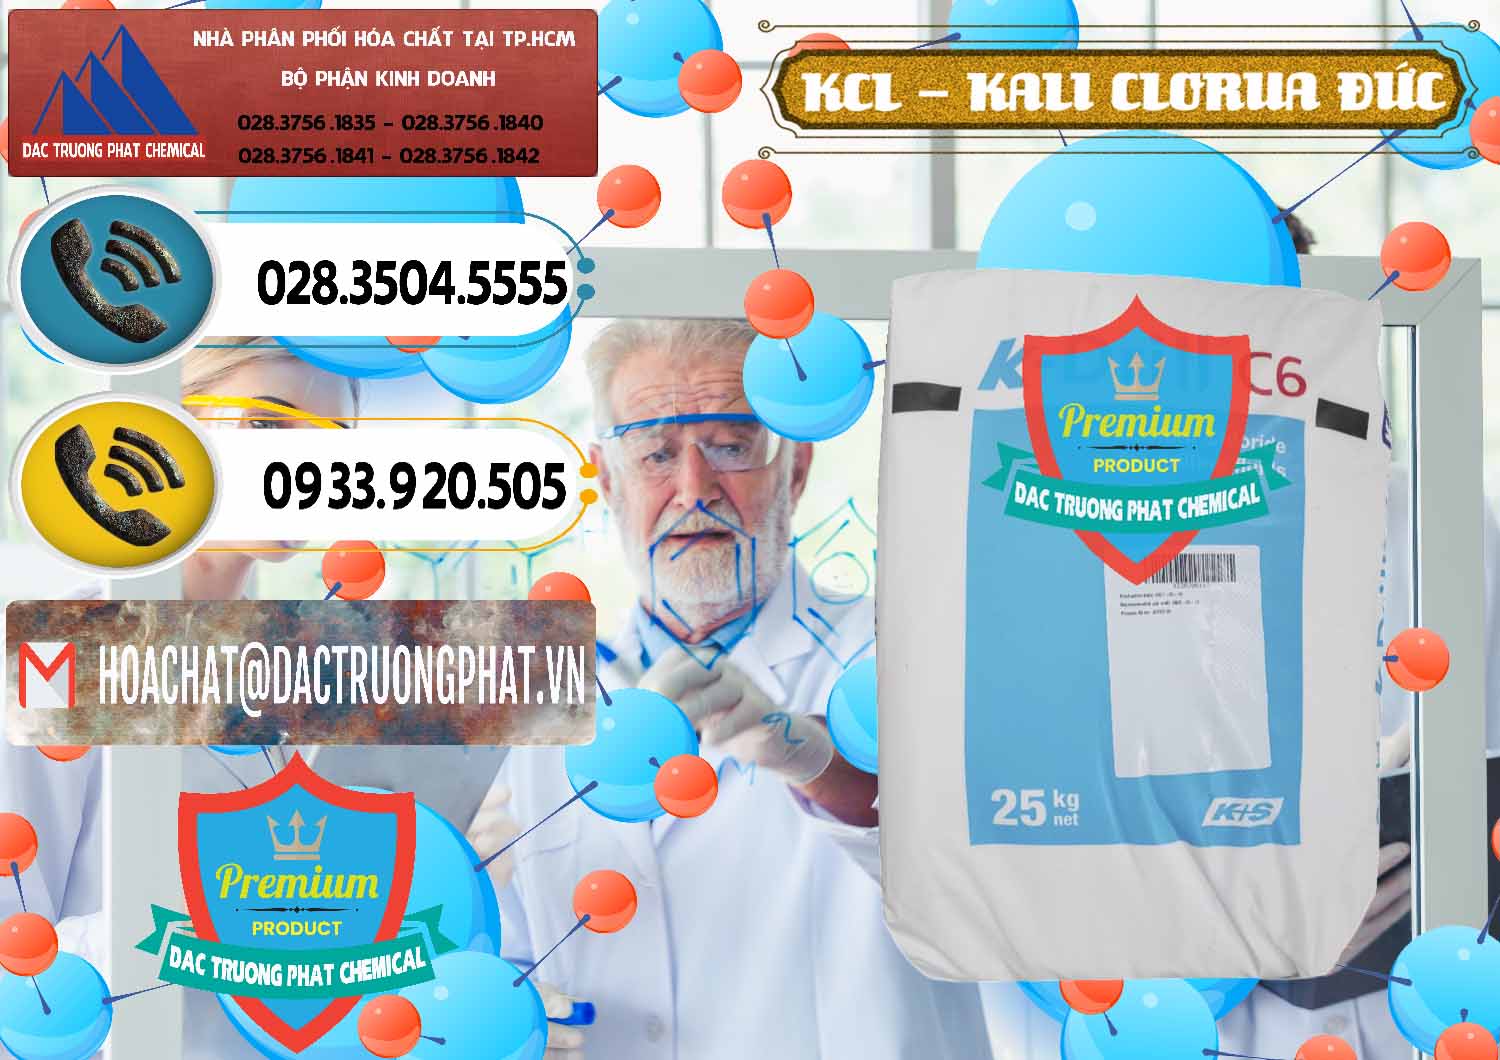 Bán _ cung cấp KCL – Kali Clorua Trắng K DRILL Đức Germany - 0428 - Cty chuyên kinh doanh ( phân phối ) hóa chất tại TP.HCM - hoachatdetnhuom.vn